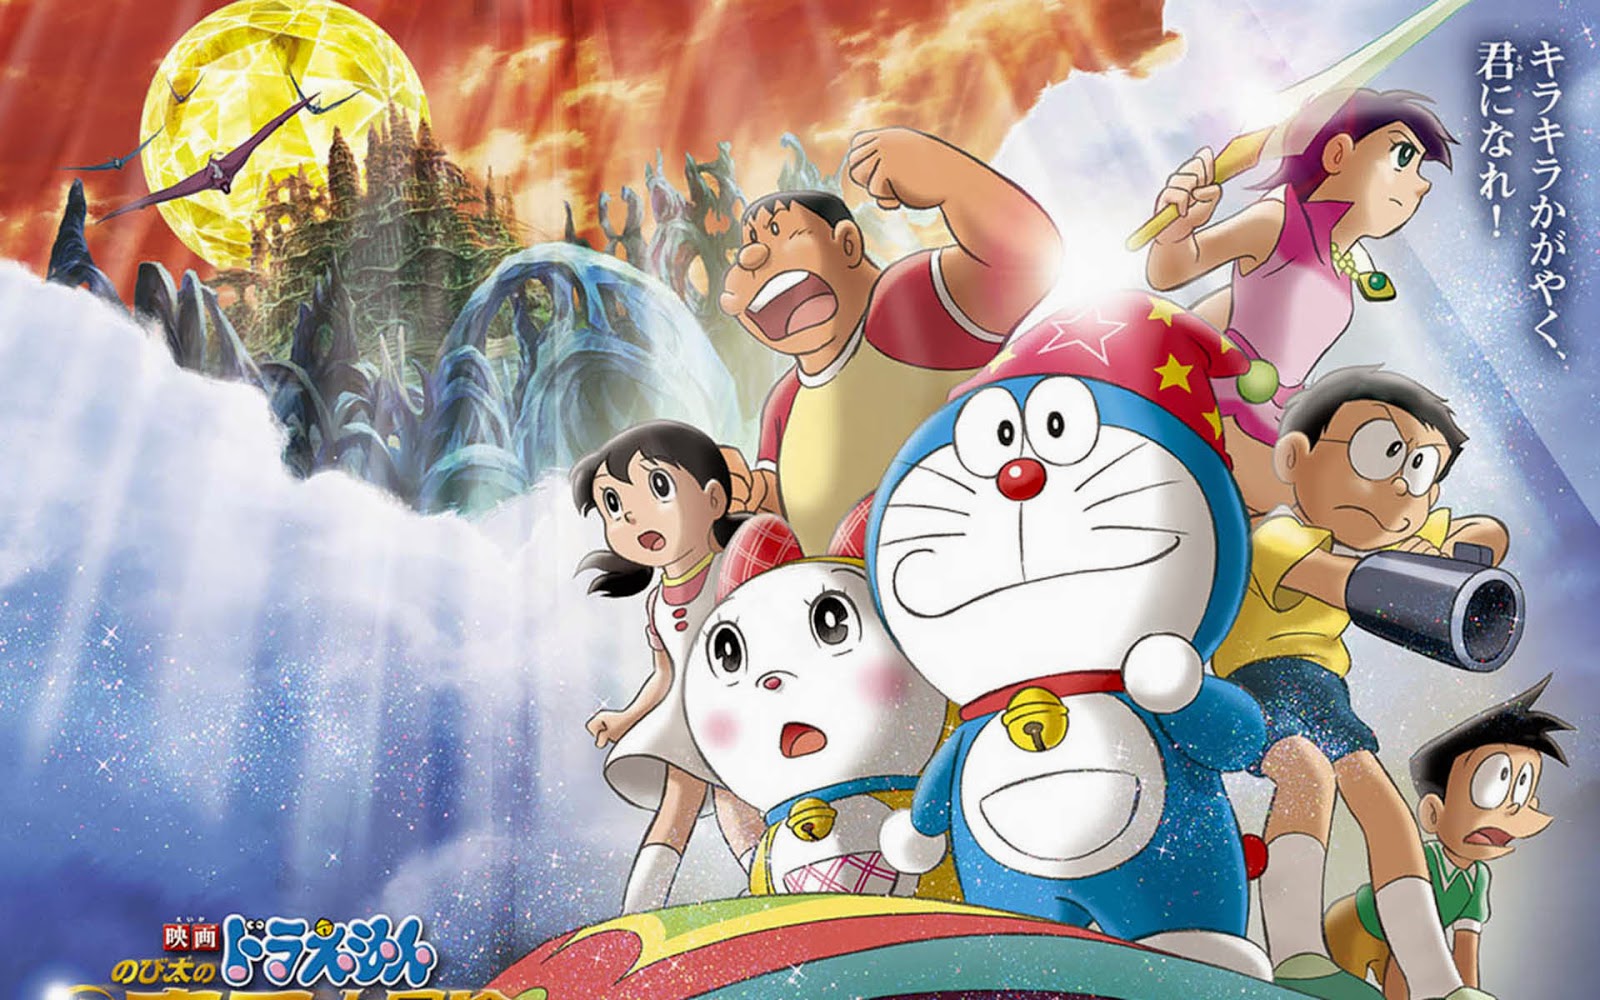 Komik Doraemon Episode Terakhir Takut Menangis Jangan Baca Dunia